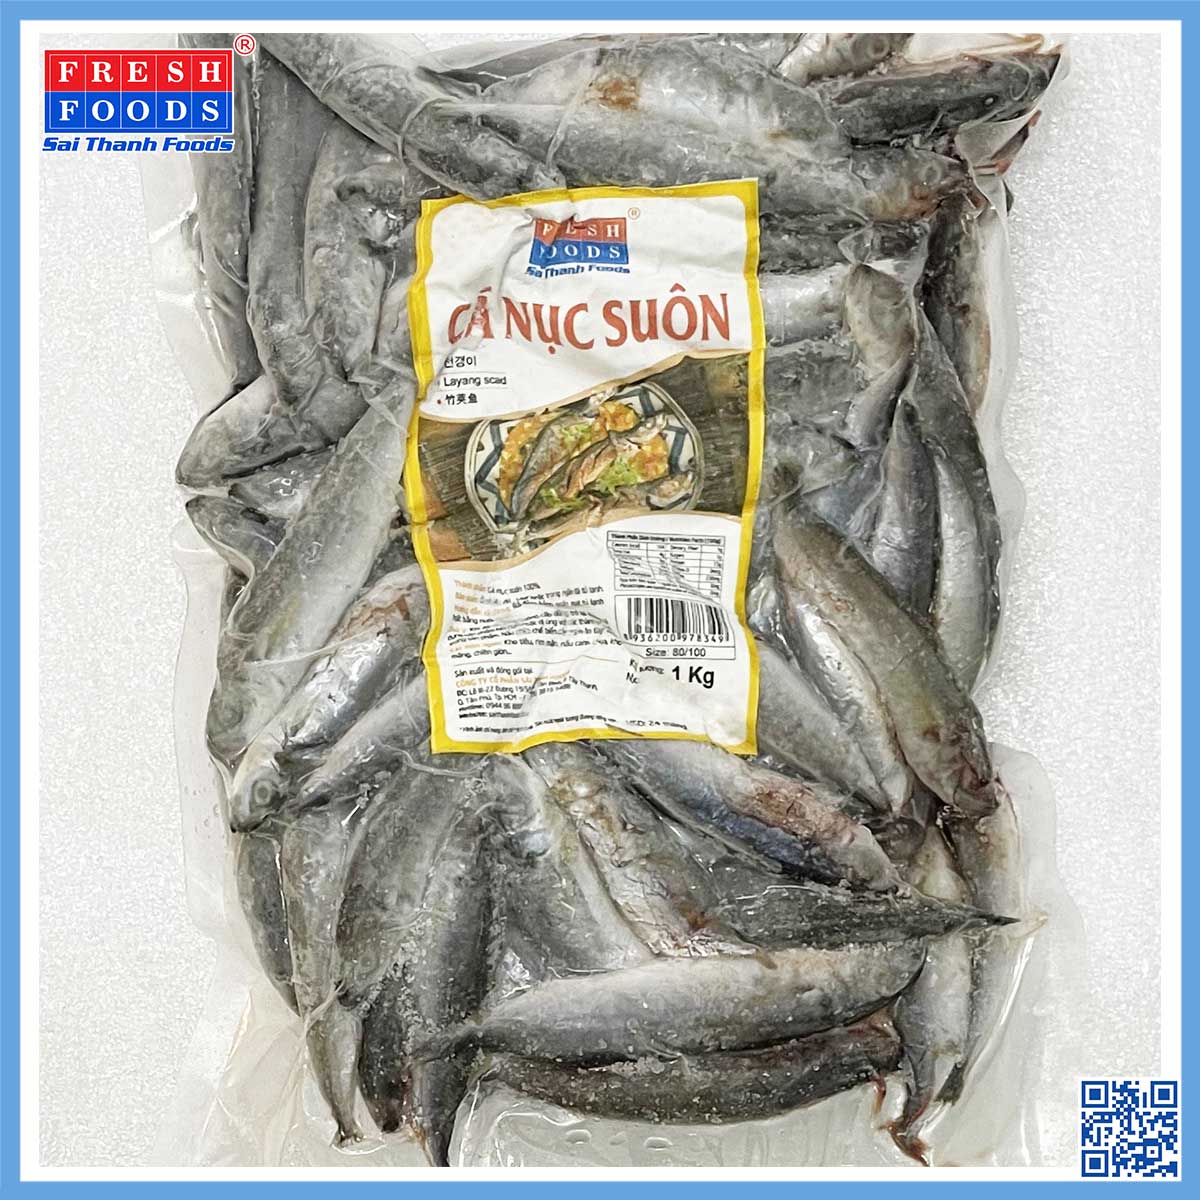 Cá nục suôn - Thủy Hải Sản Sài Thành Foods - Công Ty Cổ Phần Sài Thành Foods